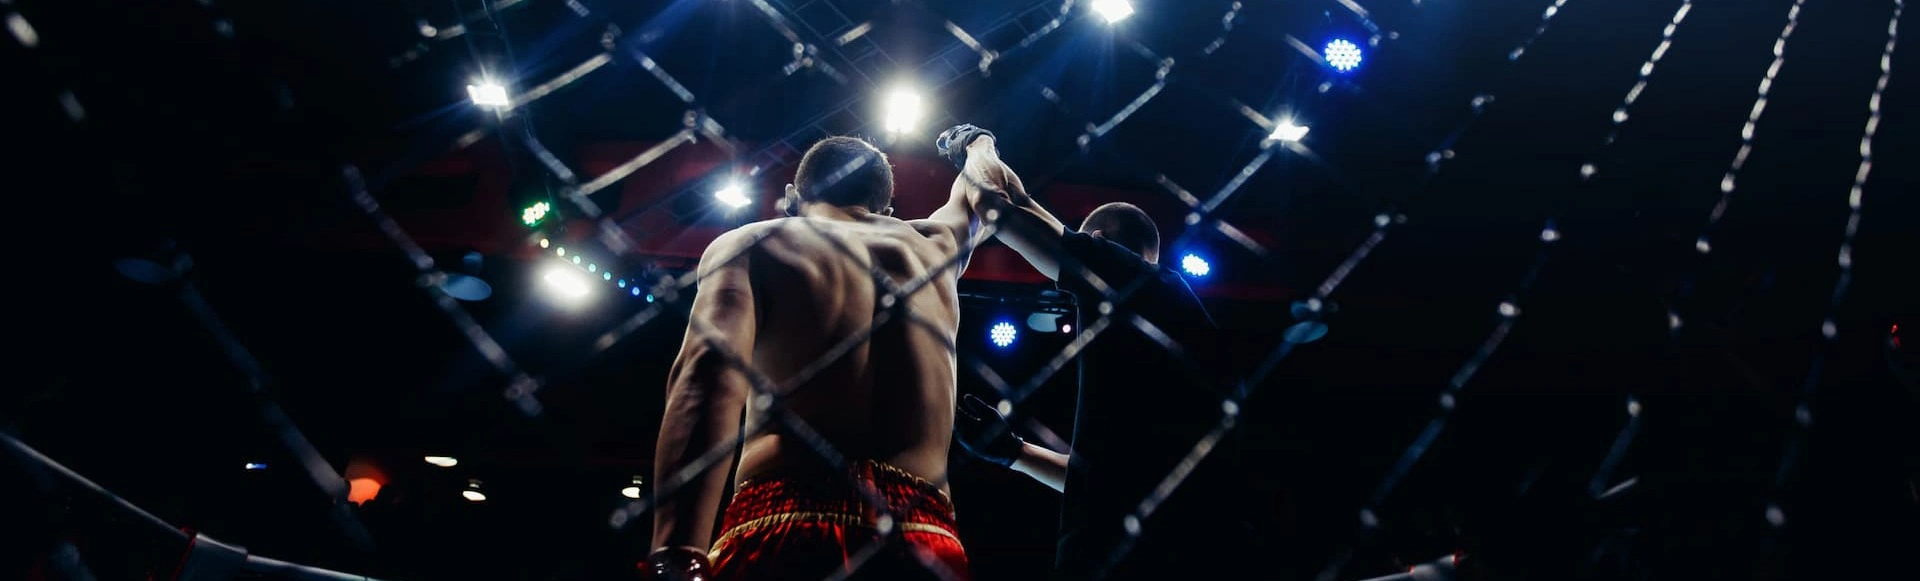 Турнир Hardcore Boxing. Тимур Слащинин VS Гаджи Наврузов